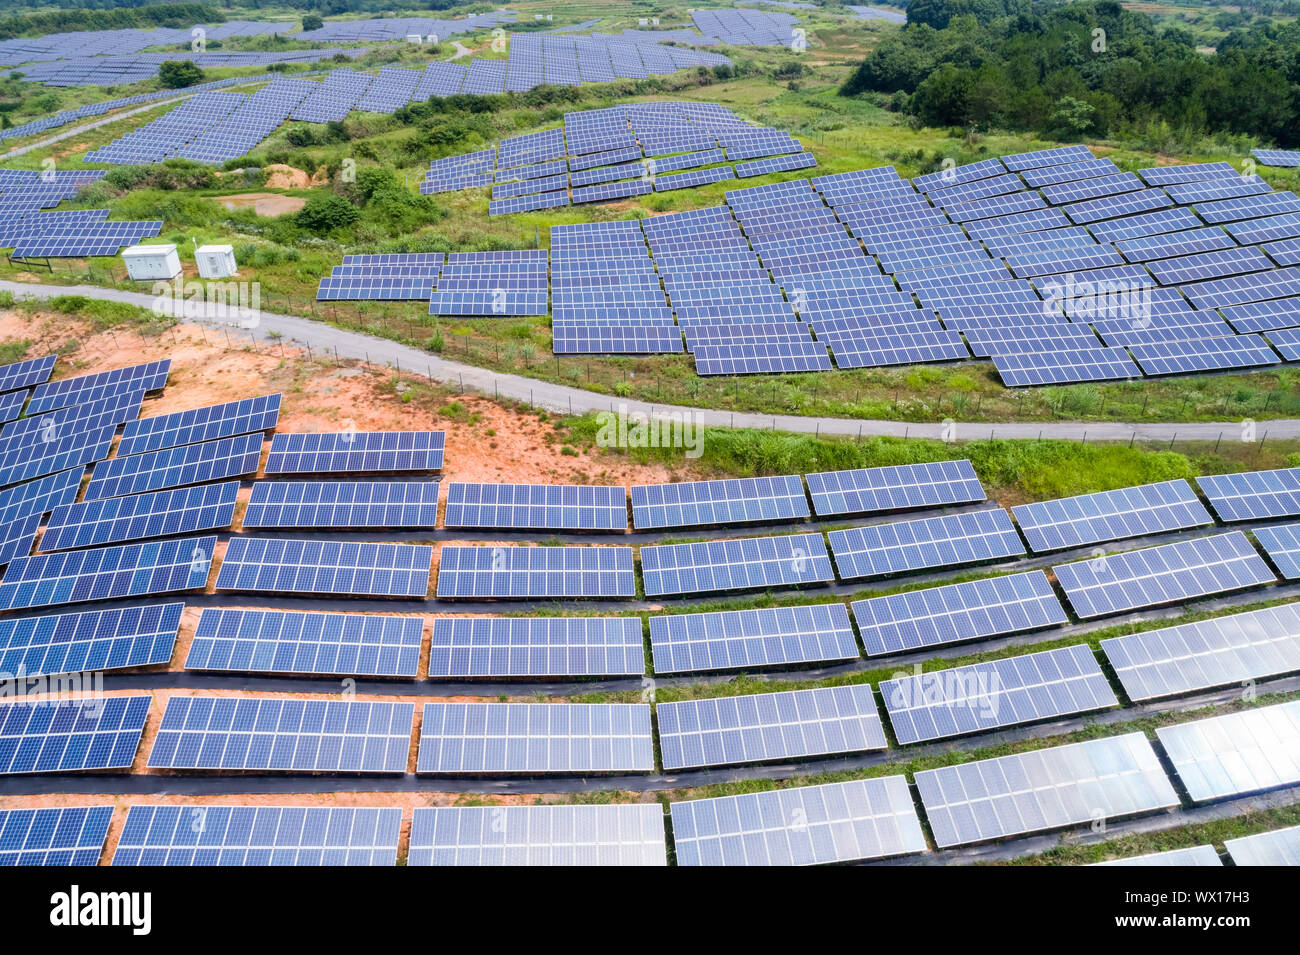 solar power panels on hillside Stock Photo